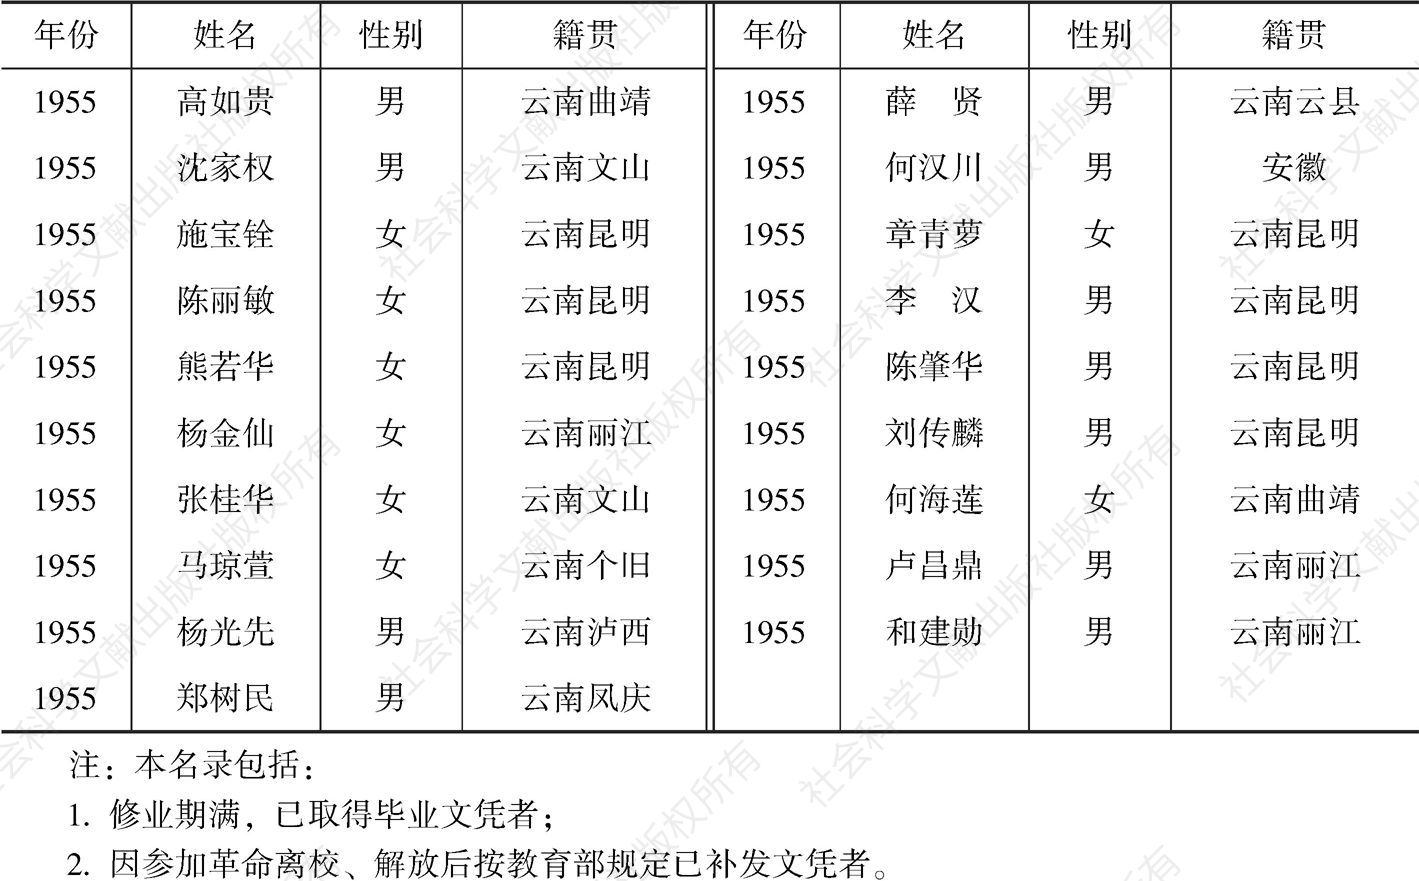 云南大学社会学系毕业学生名单-续表2